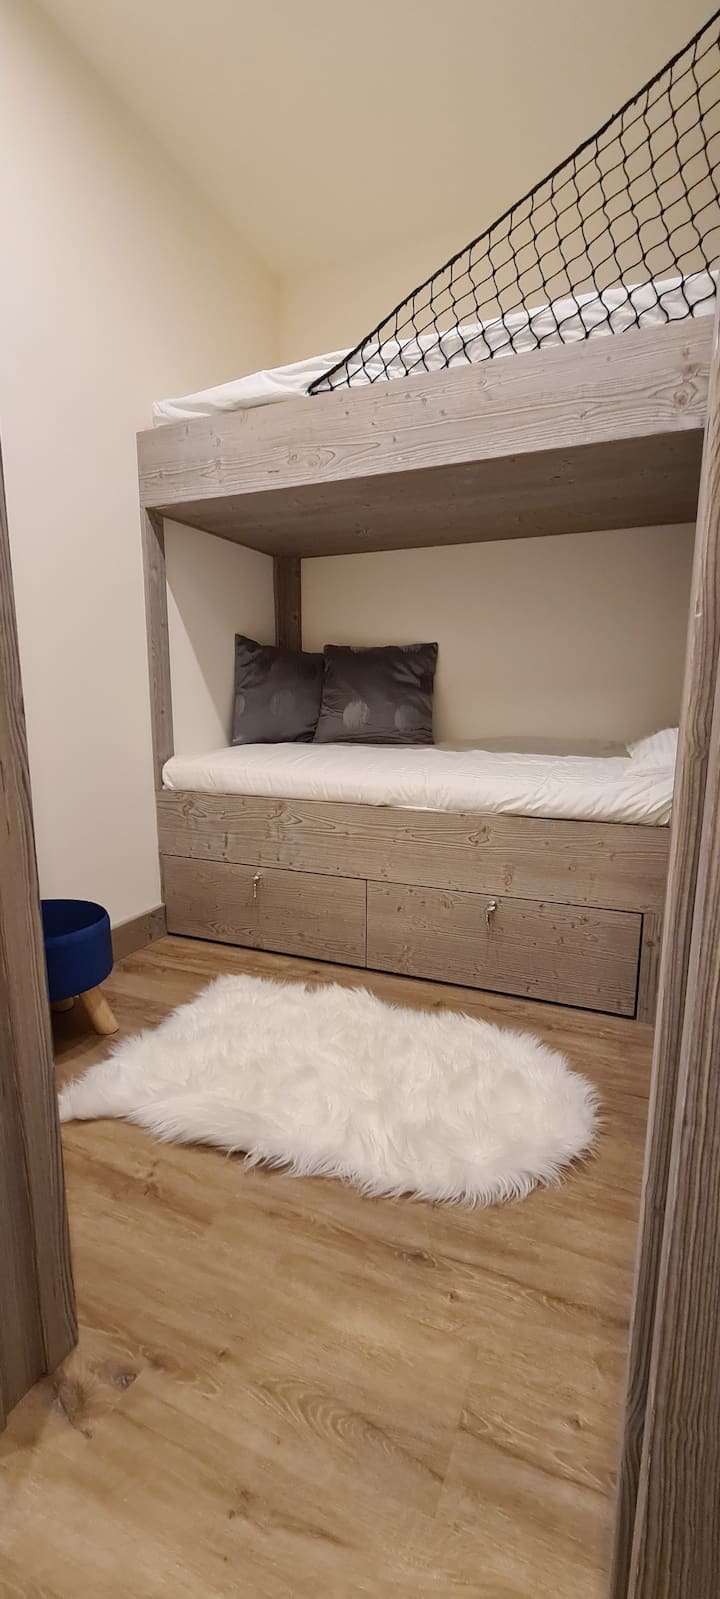 Chambre avec lits superposés et grand placard pour rangement